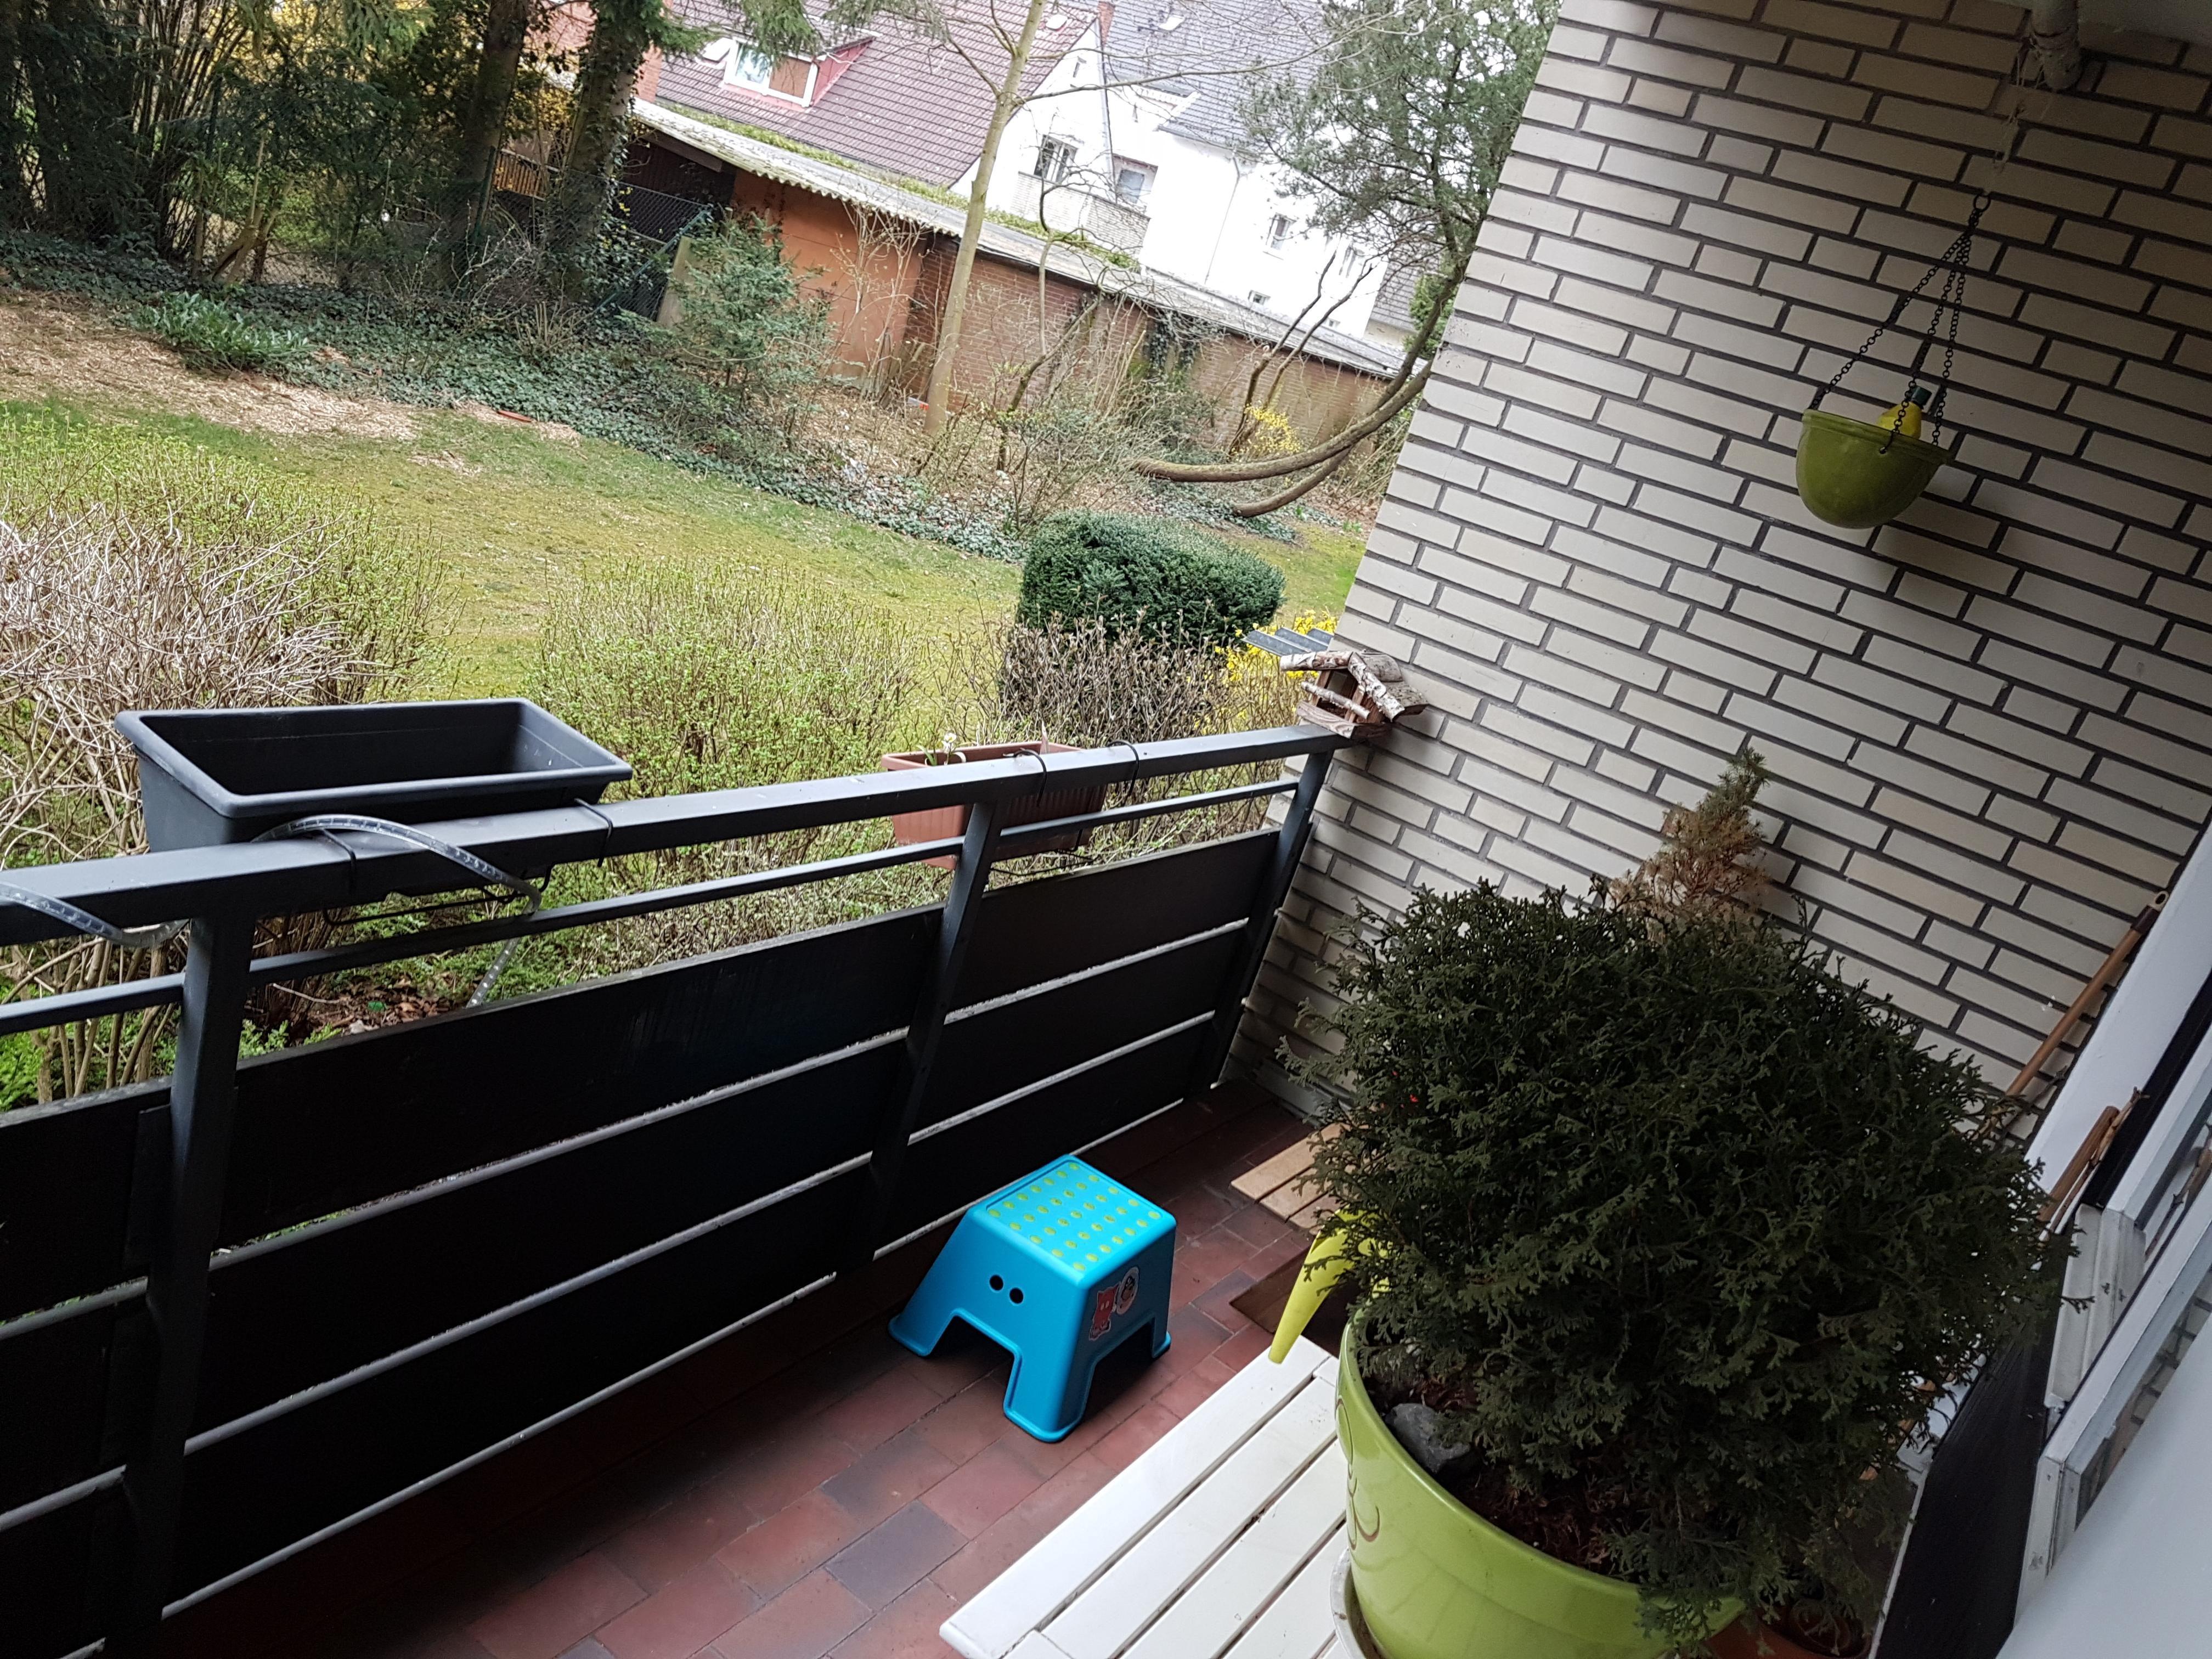 Trist, trister, #meinbalkon
Für das HHer Wetter kann ich nichts - für den faden Balkon schon. Ich habe nur keine Ideen. 